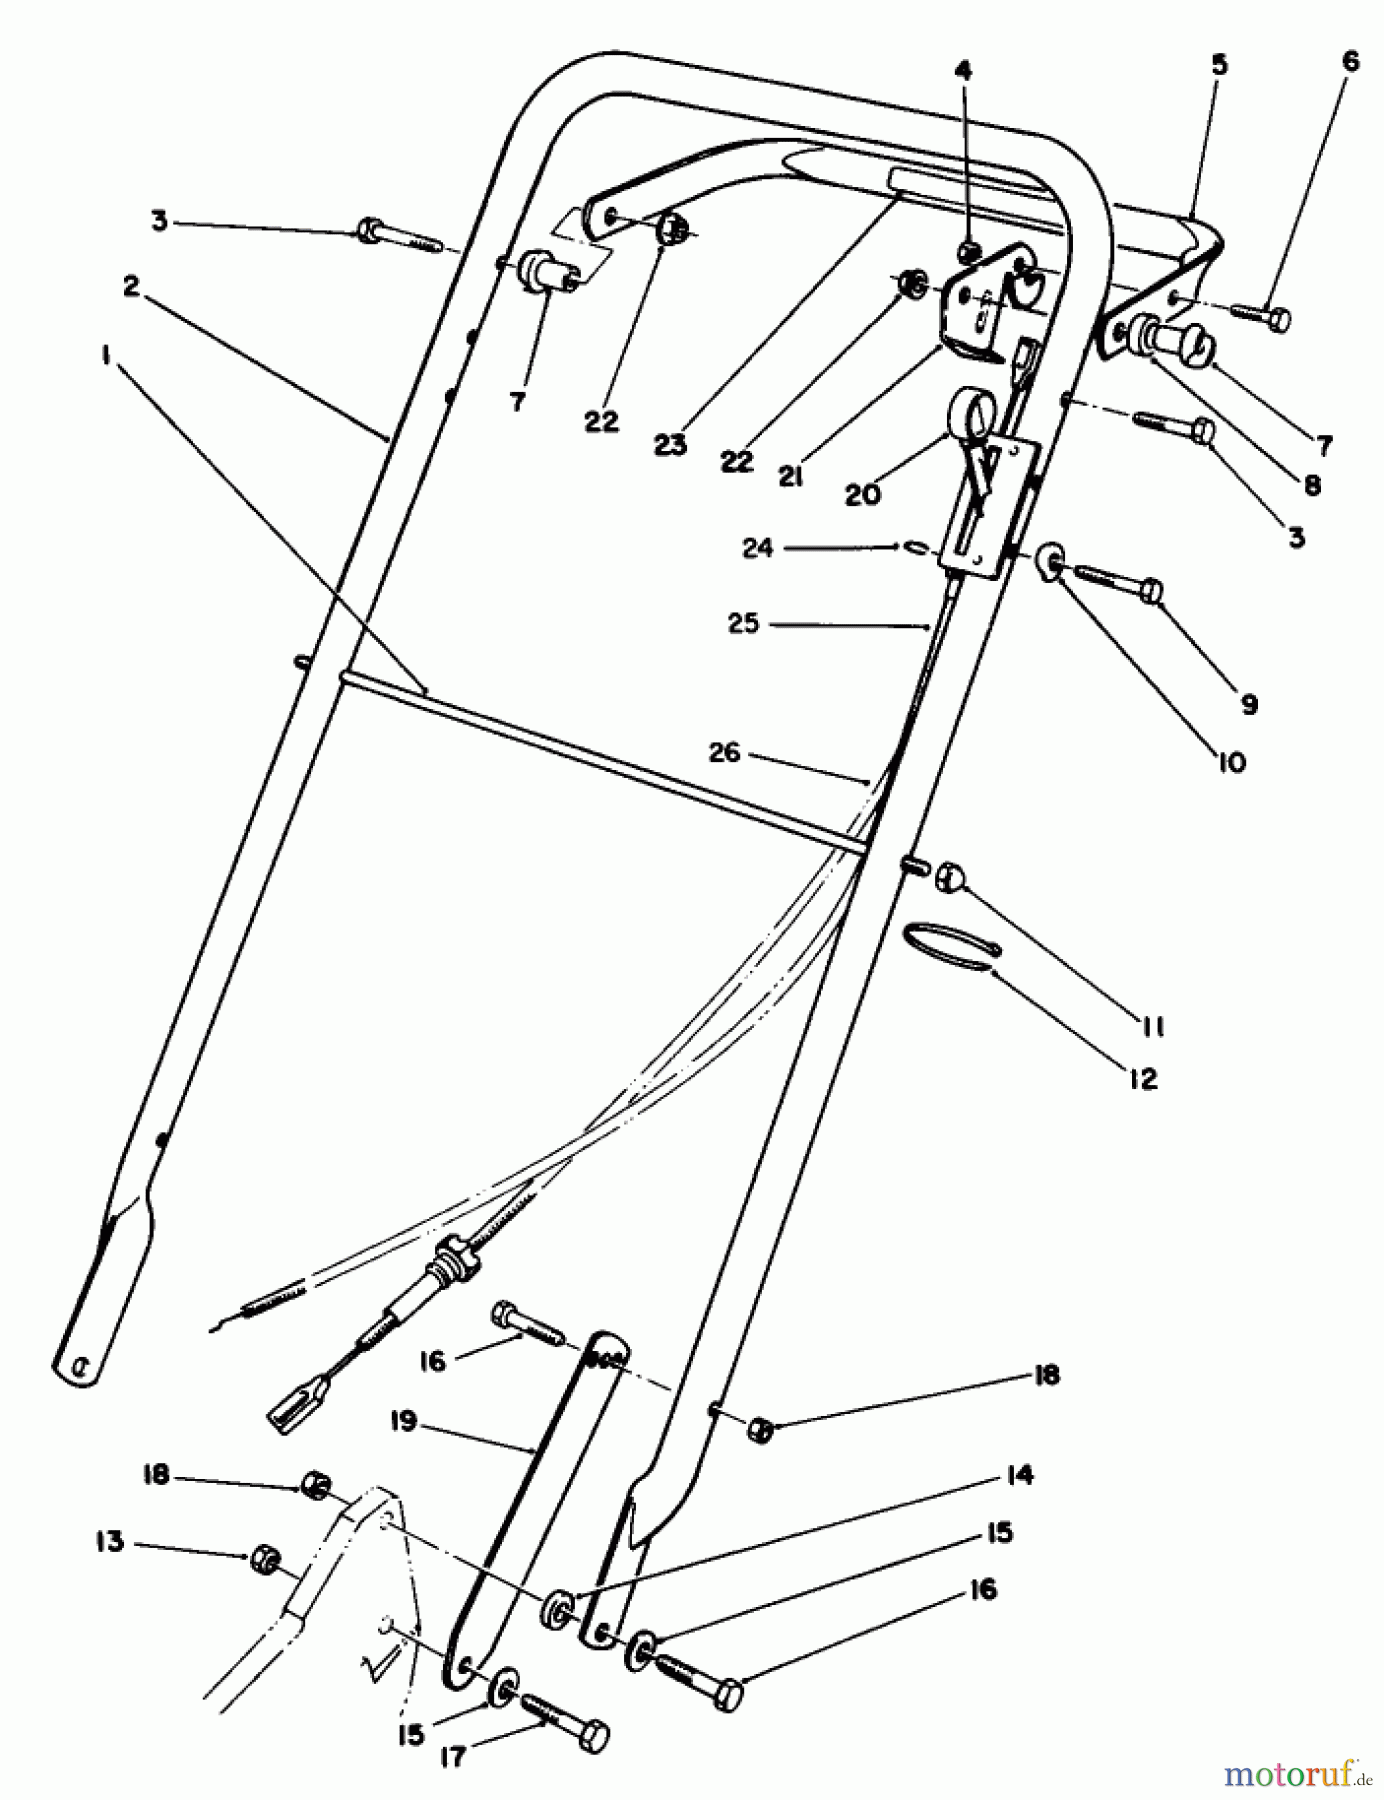  Toro Neu Mowers, Walk-Behind Seite 2 22030 - Toro Lawnmower, 1990 (0000001-0999999) HANDLE ASSEMBLY (MODEL 22035)